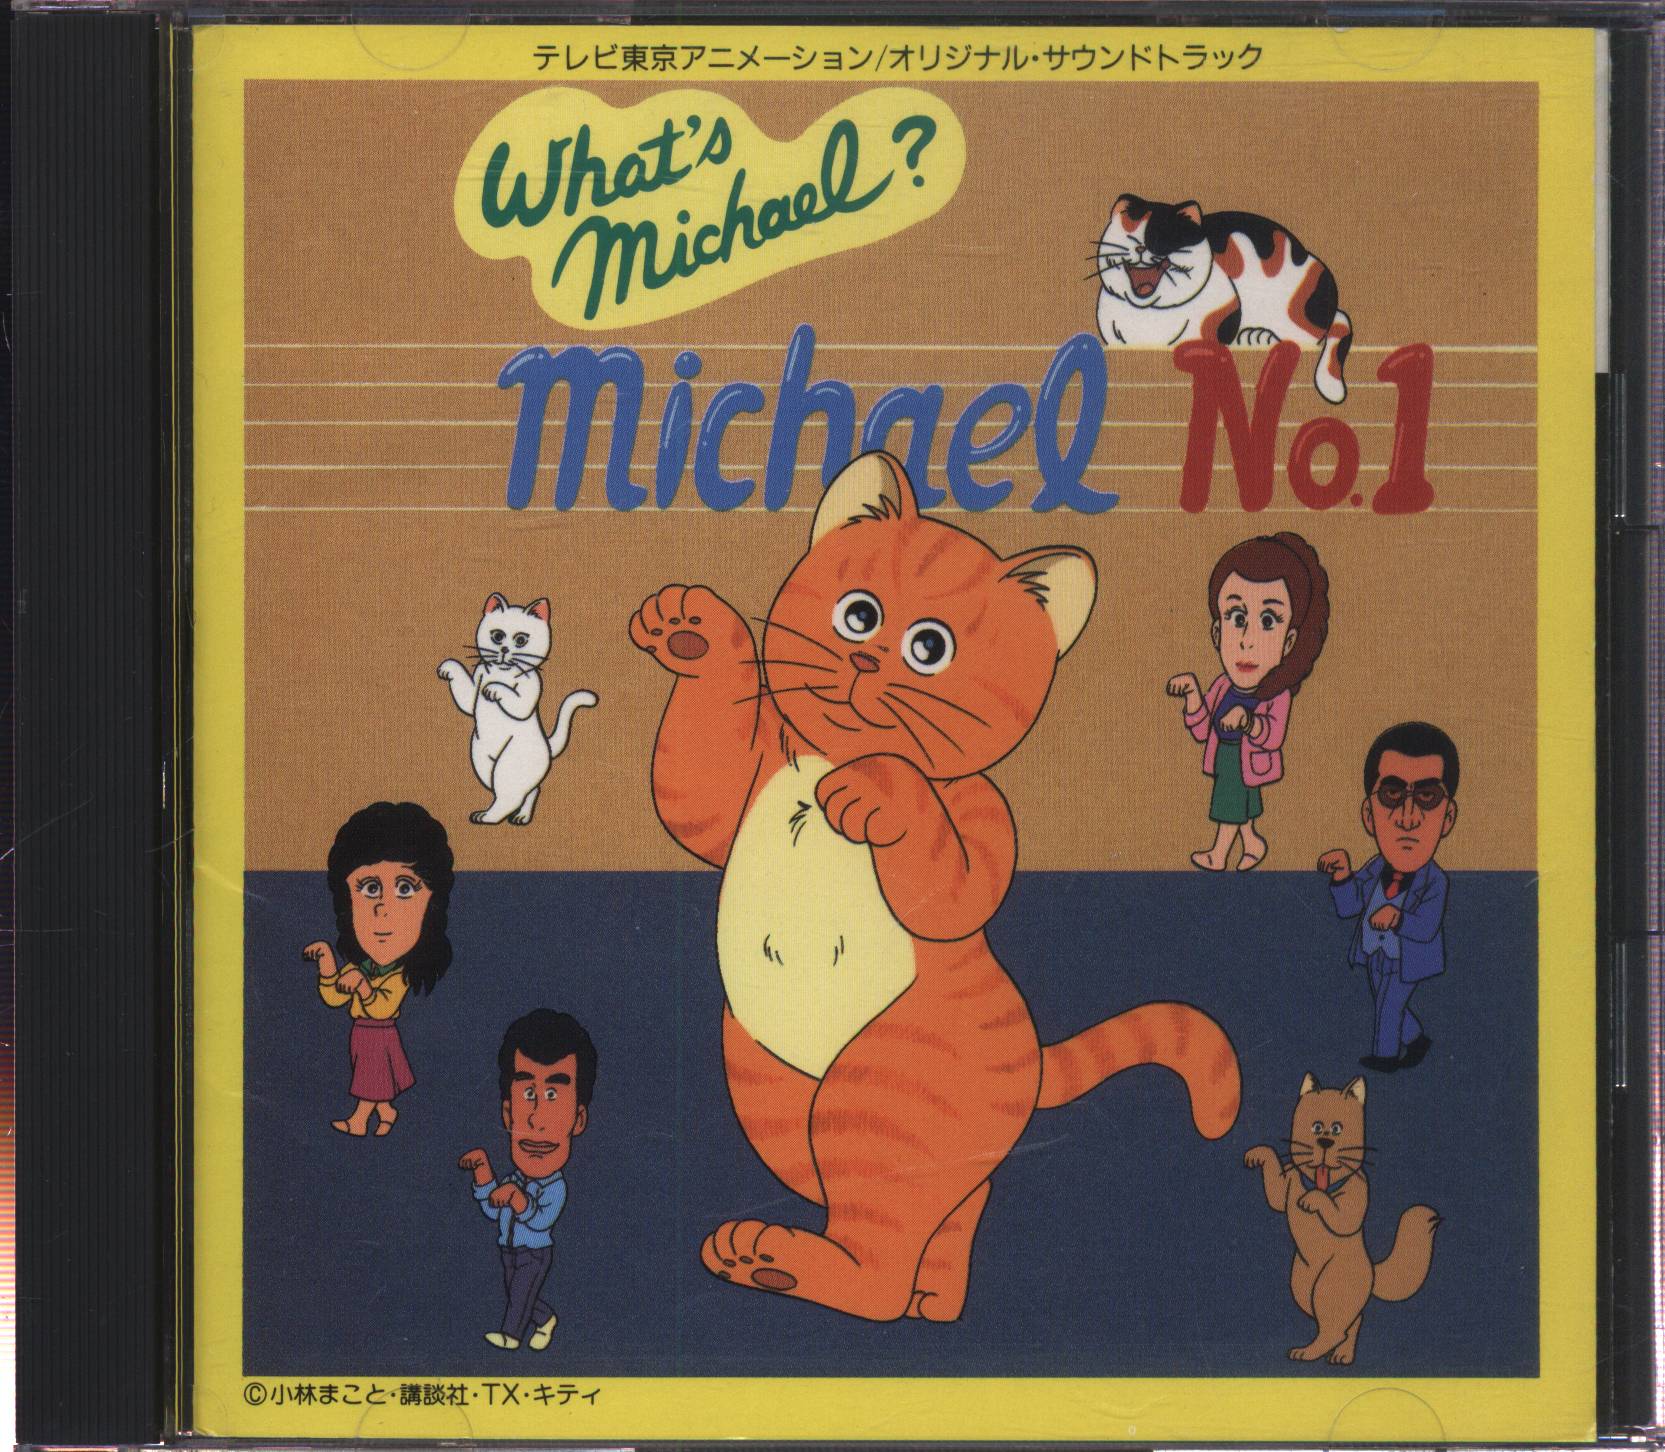 アニメCD ホワッツマイケル オリジナル・サウンドトラック Michael No